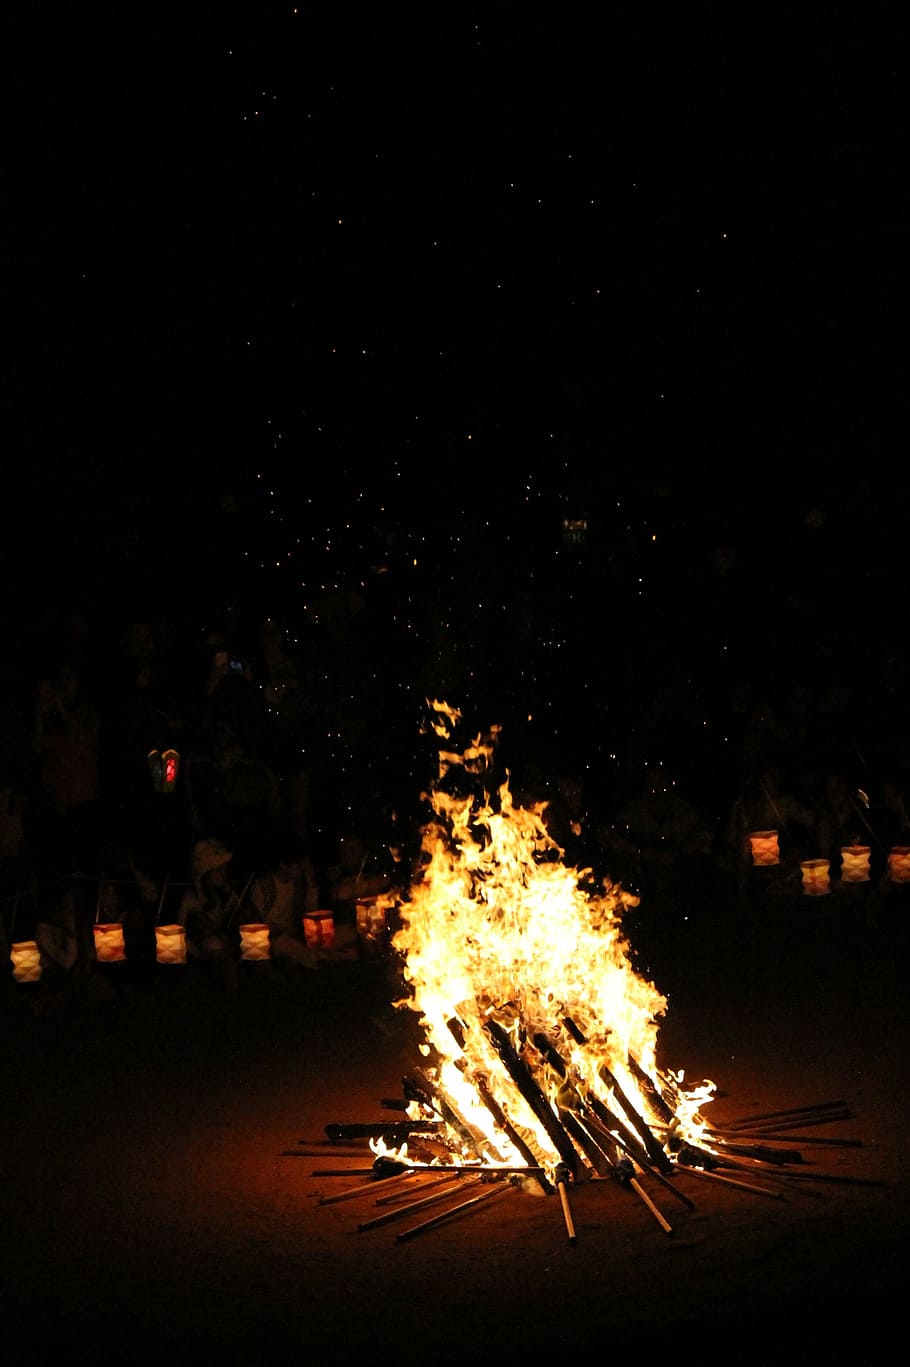 fogueira perto da lanterna, festa junina, celebração, a estaca, noite, ardente, fogo - fenômeno natural, chama, fogo, calor - temperatura